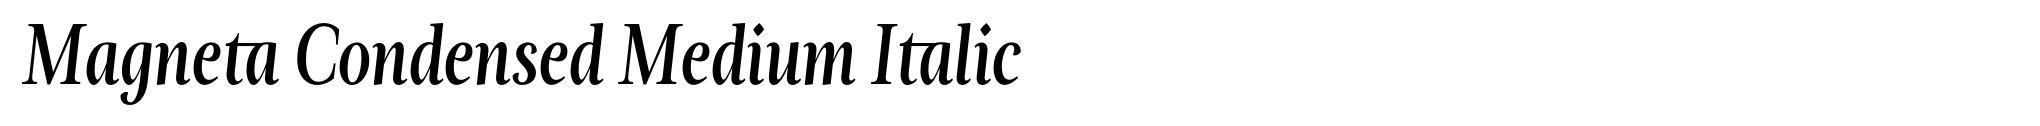 Magneta Condensed Medium Italic image